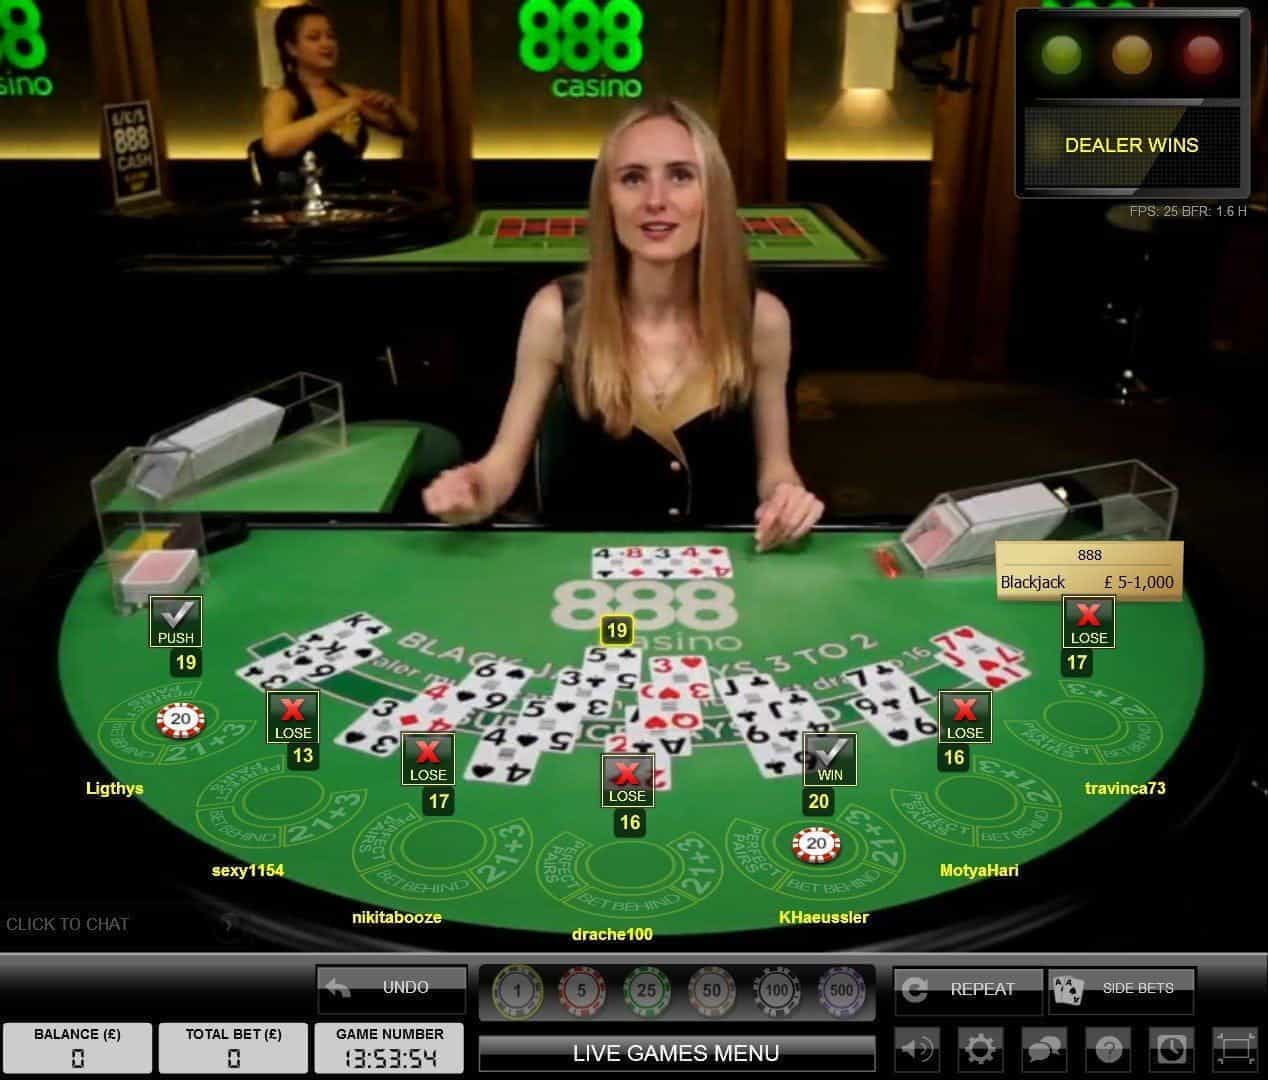 Casino 888 Live